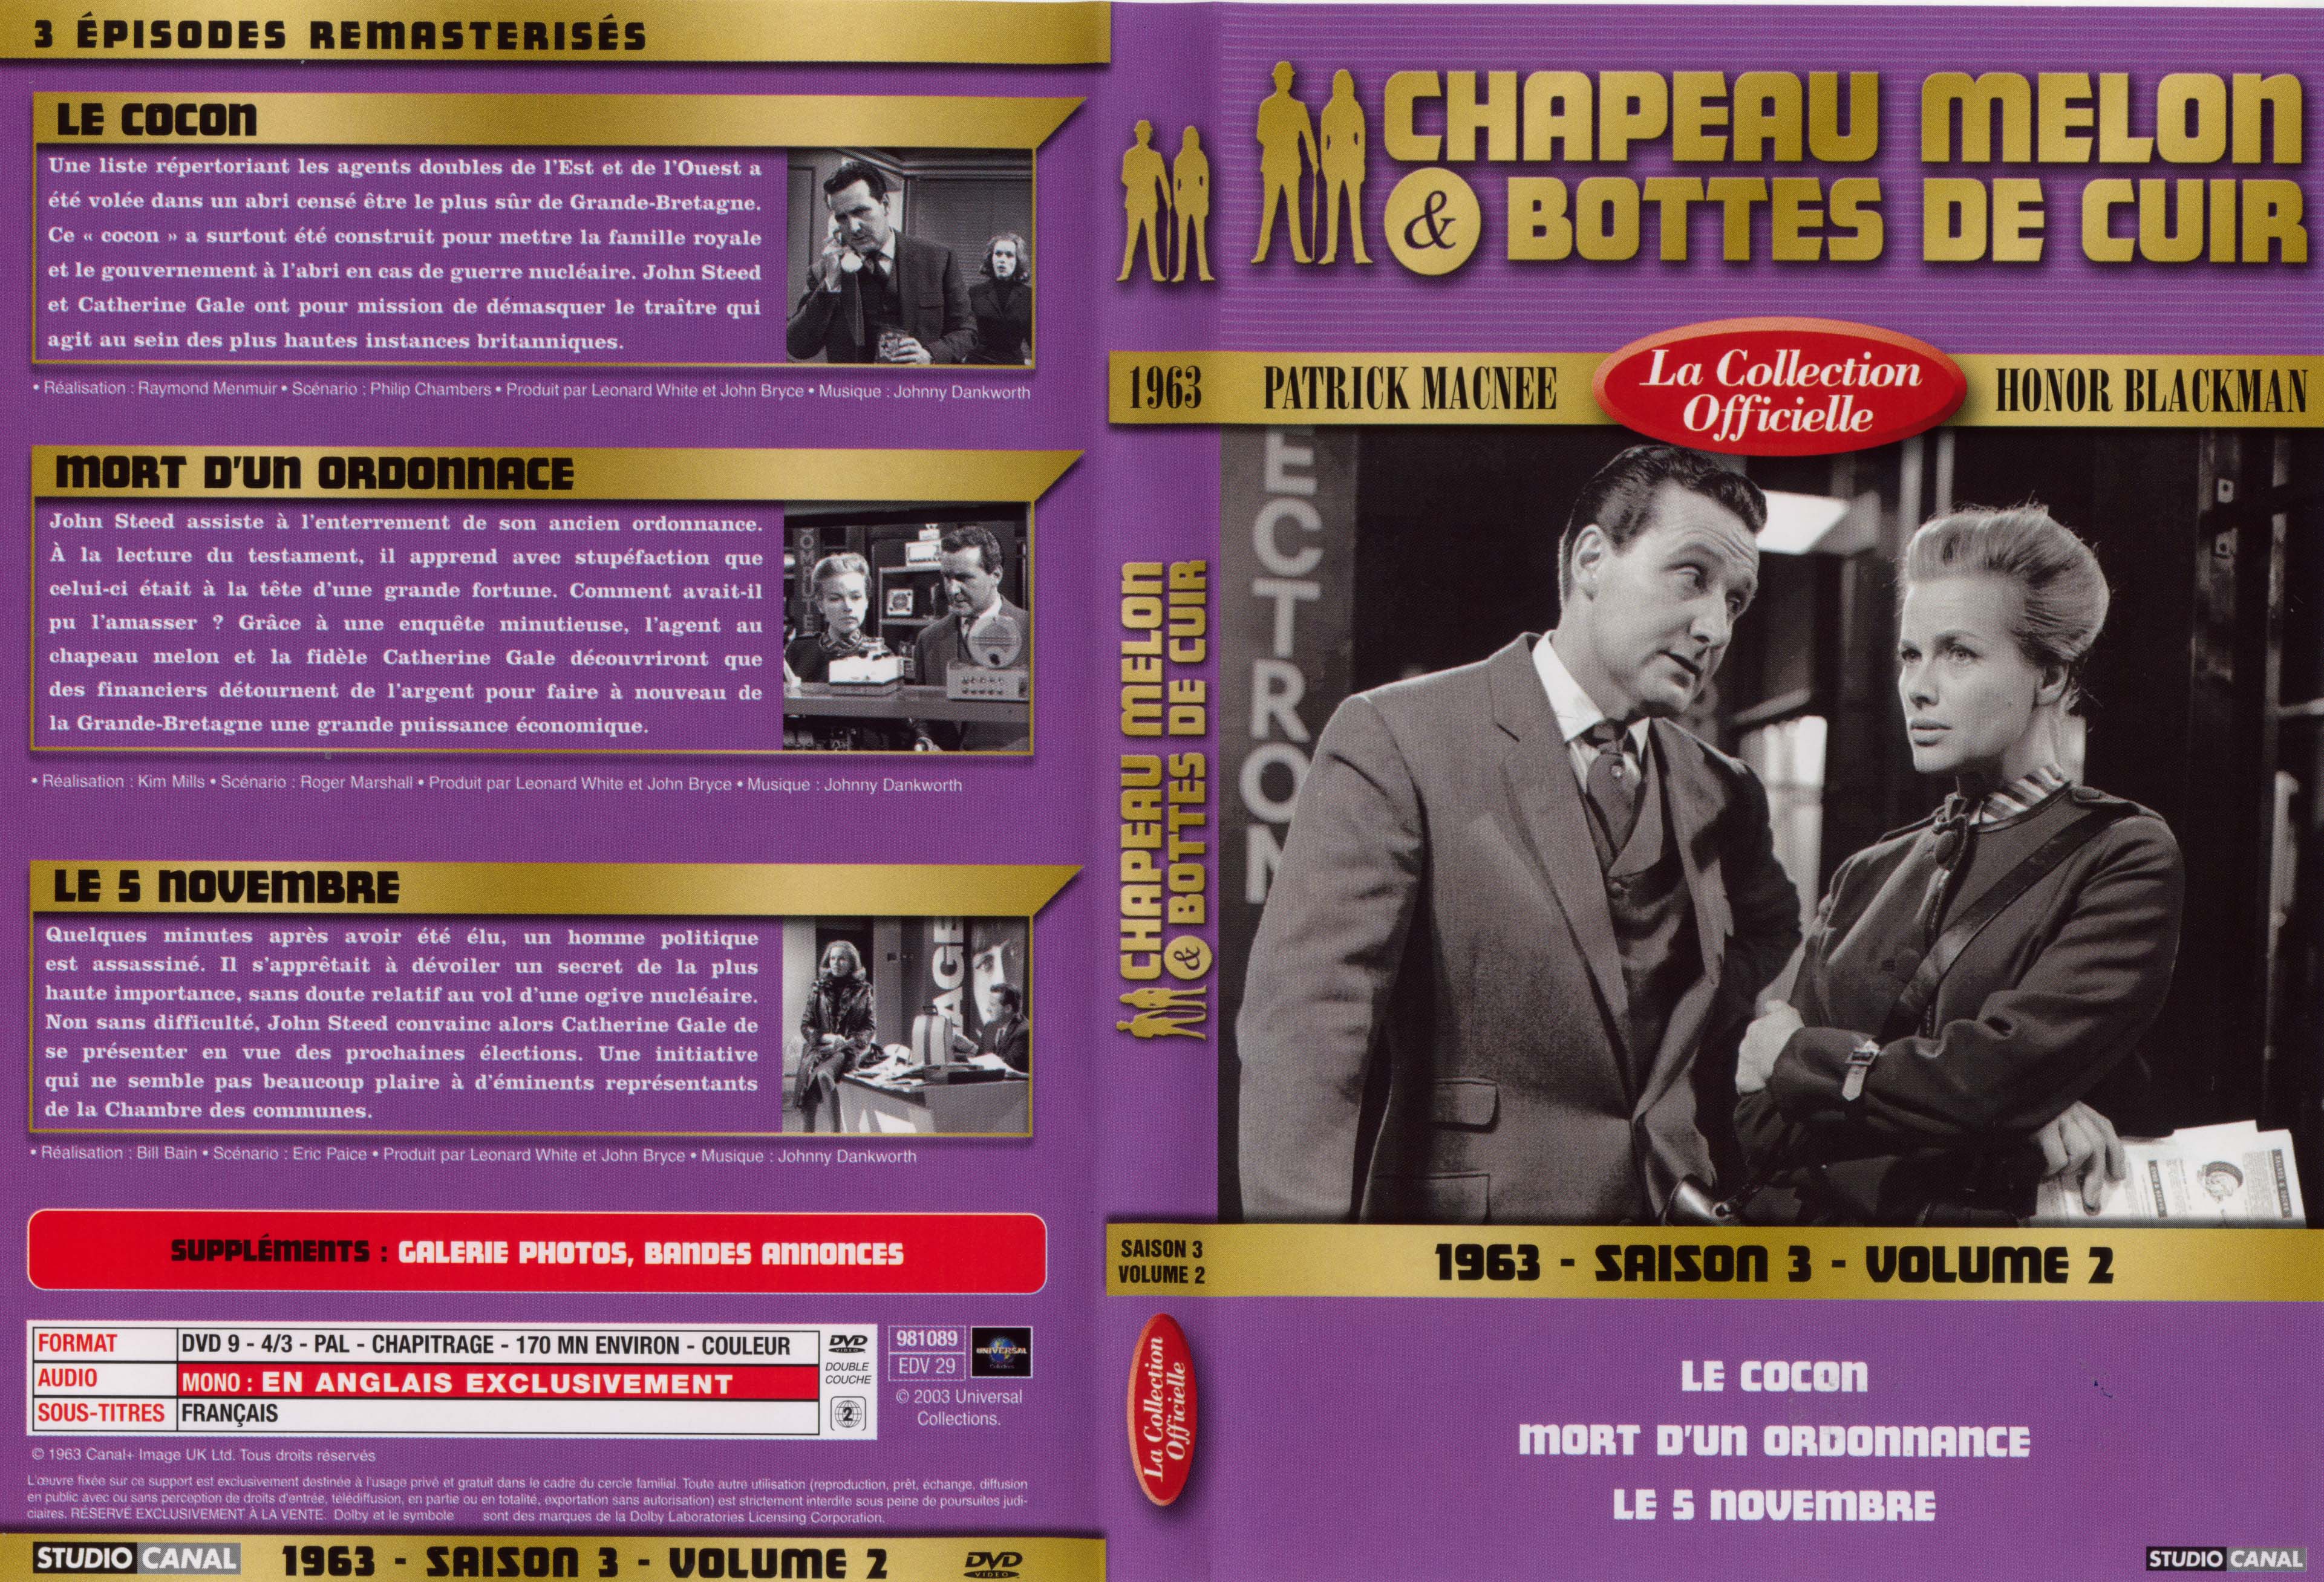 Jaquette DVD Chapeau melon et bottes de cuir 1963 saison 3 vol 2